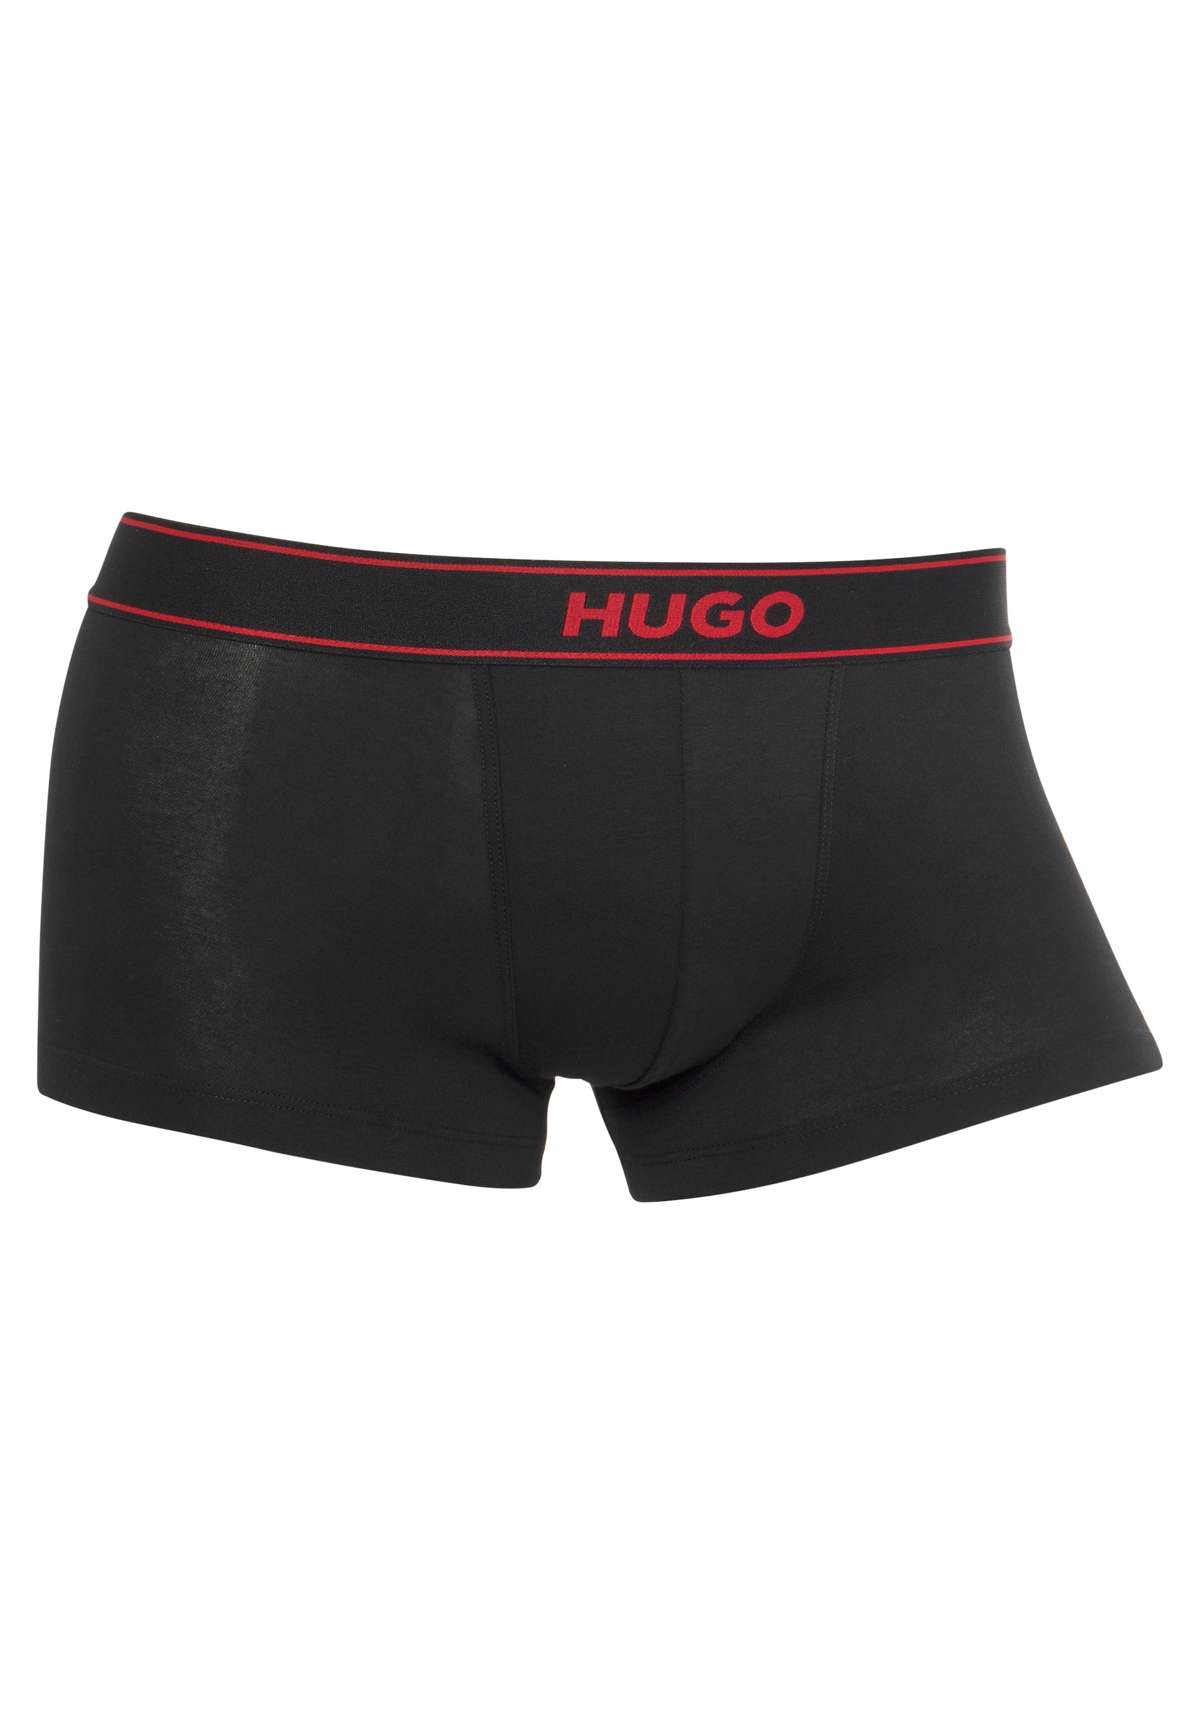 Боксеры с надписью логотипа HUGO сбоку на штанине.